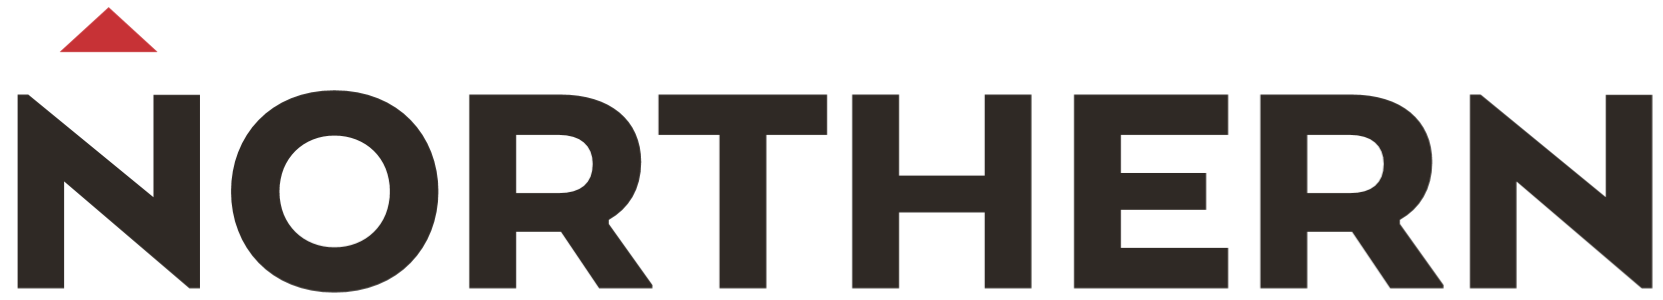 Northern Logo Wide